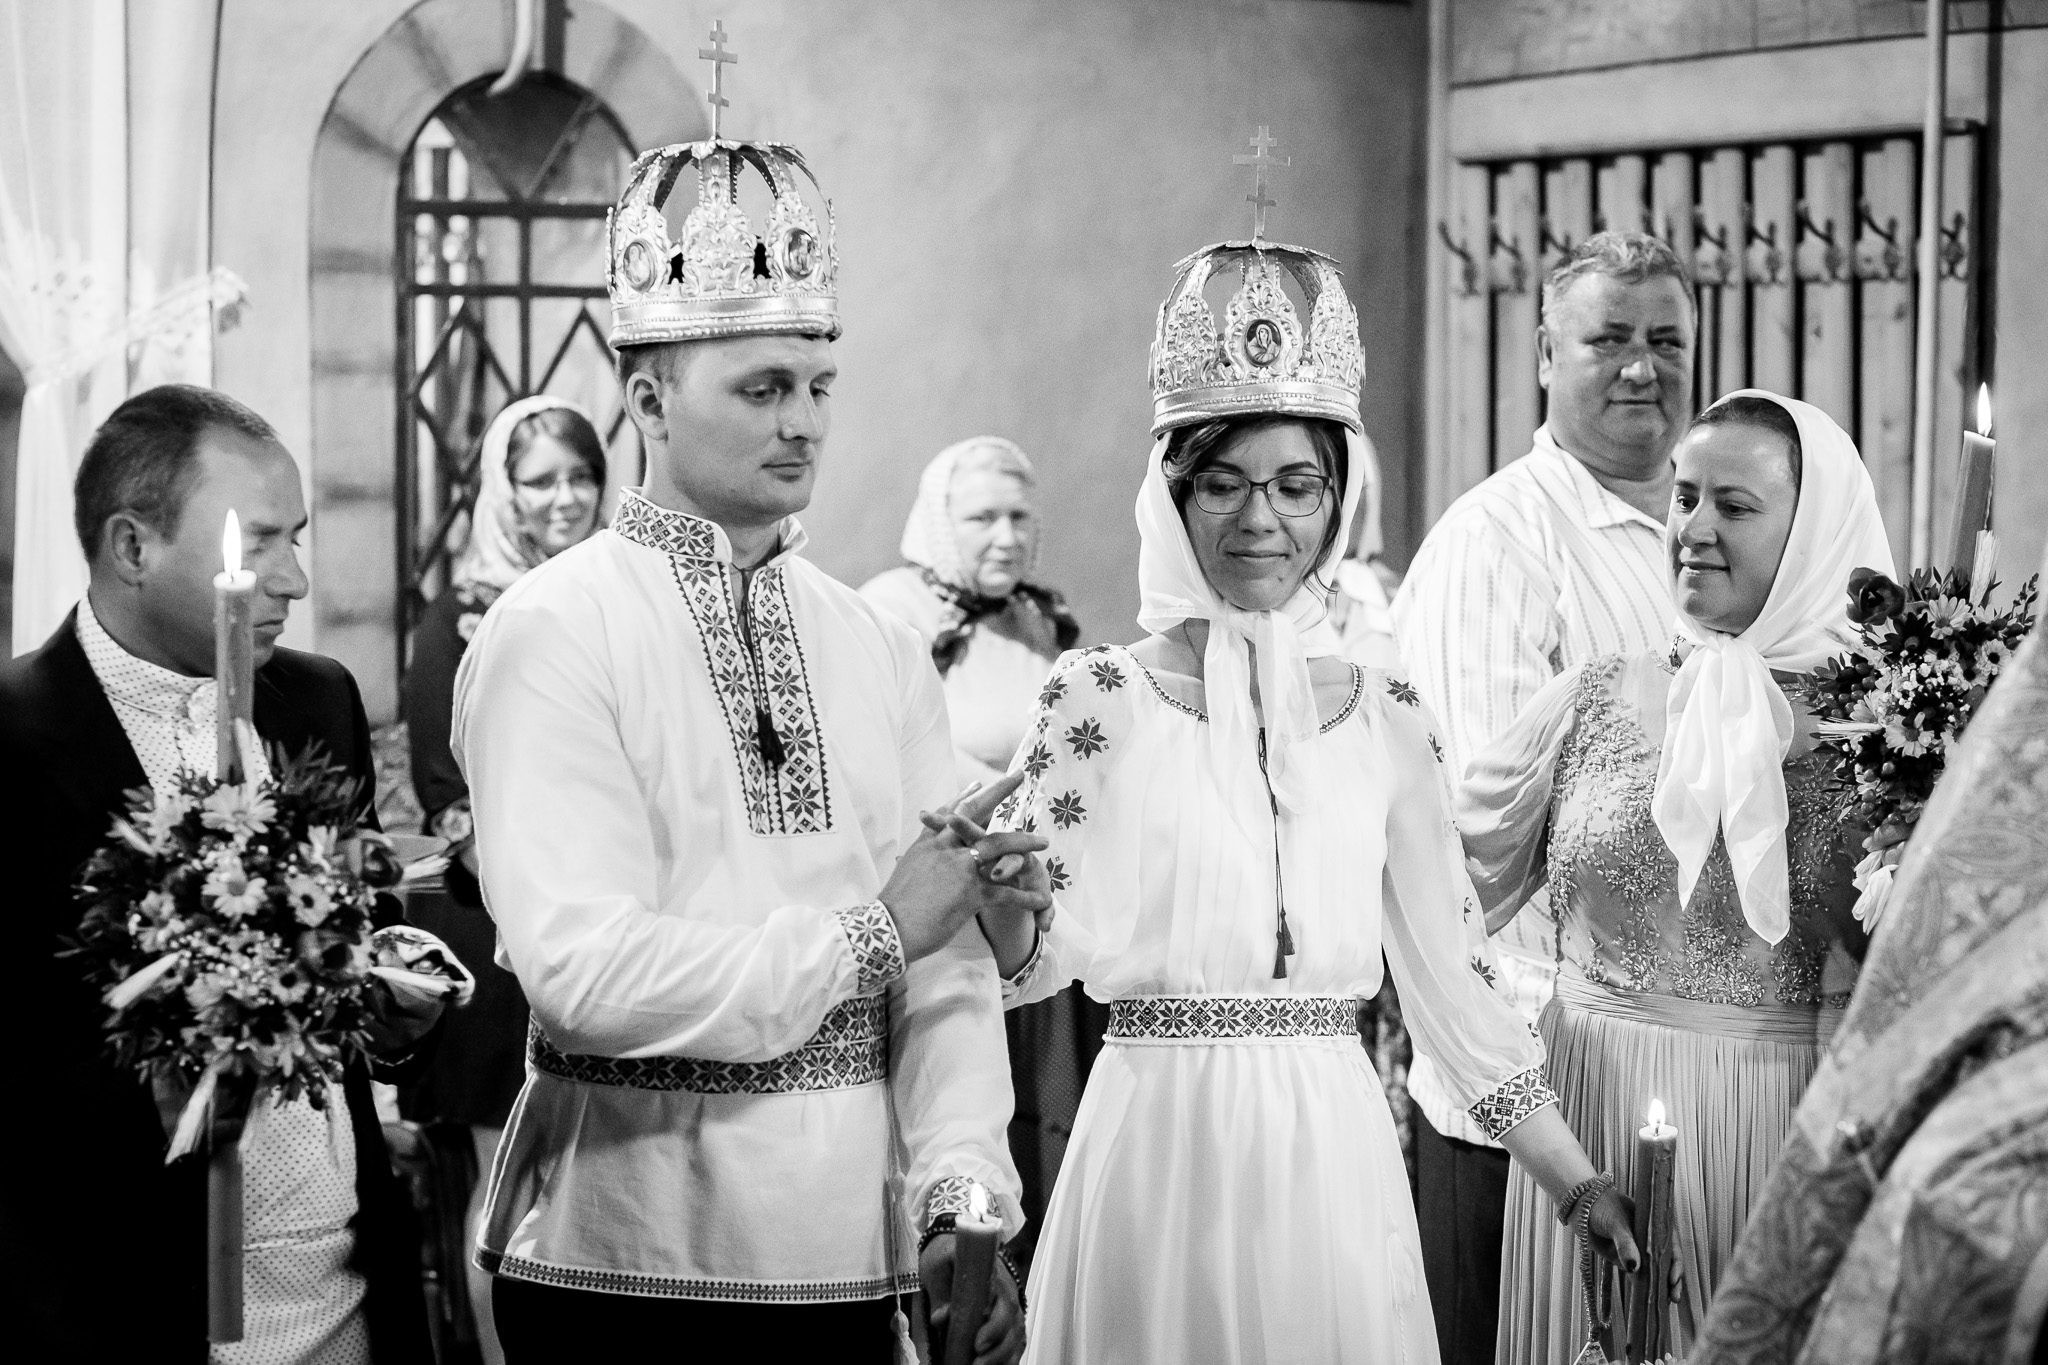 Nuntă tradițională Elisabeta și Alexandru fotograf profesionist nunta Iasi www.paulpadurariu.ro © 2018 Paul Padurariu fotograf de nunta Iasi cununia religioasa 5